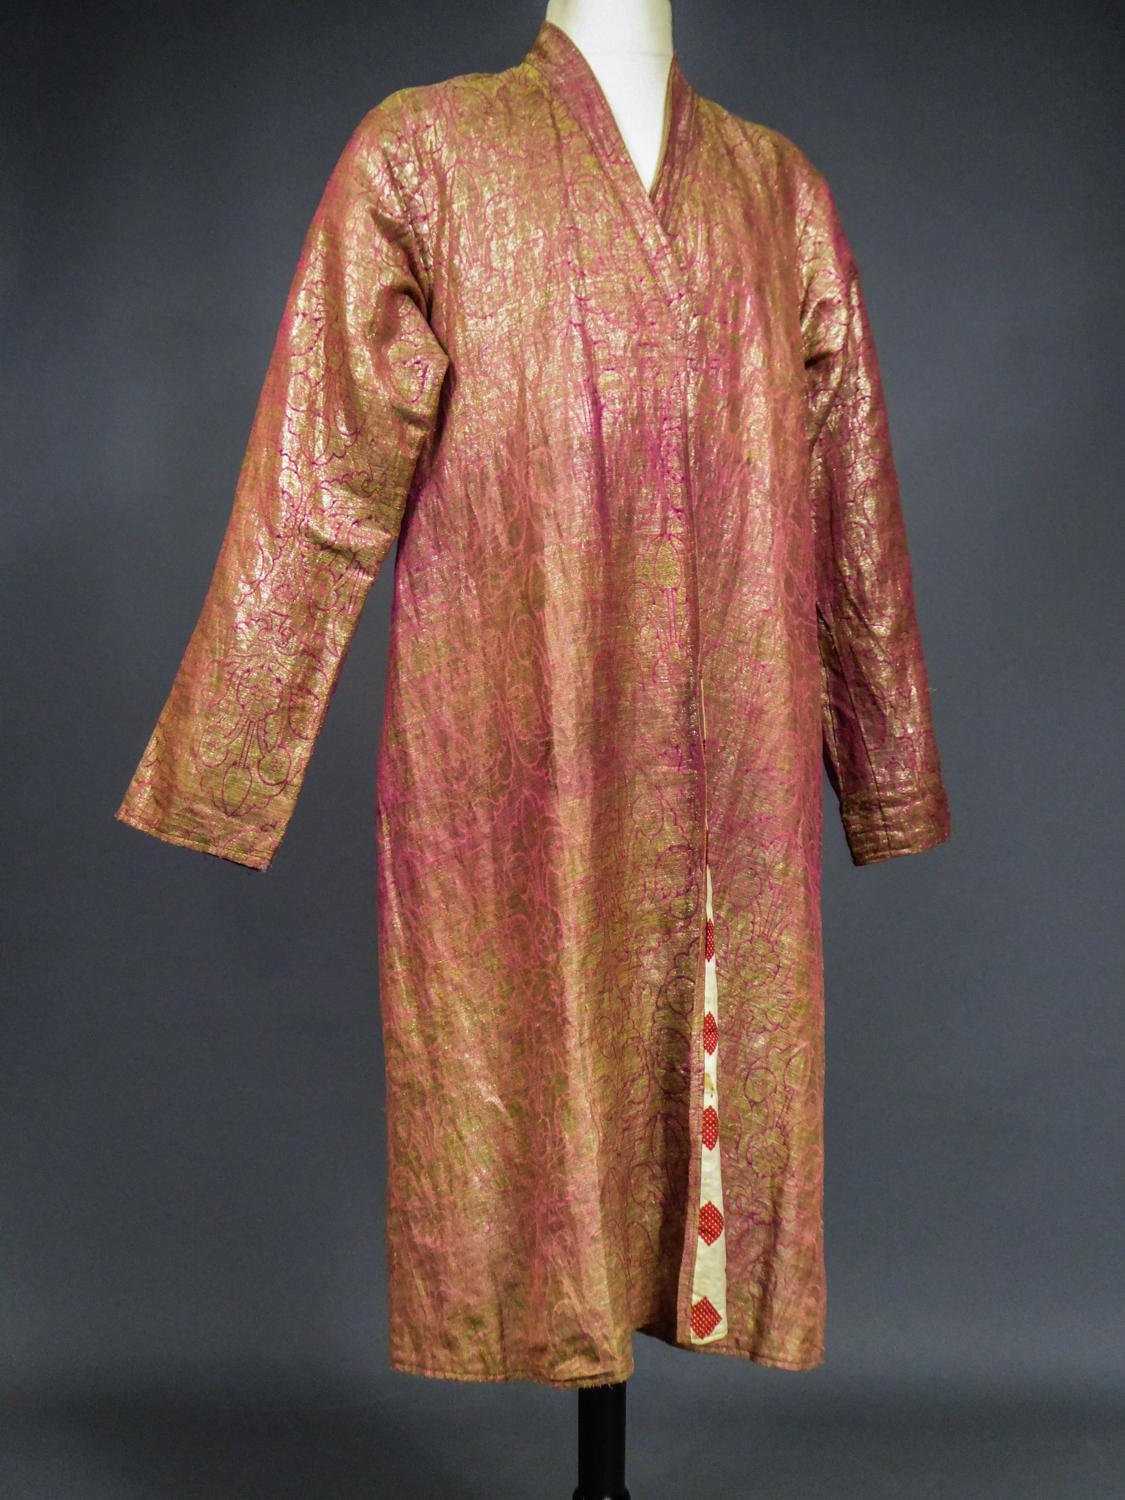 Coat or Banyan in Gold Lamé and Russian Cotton Print - Uzbekistan Circa 1920 7